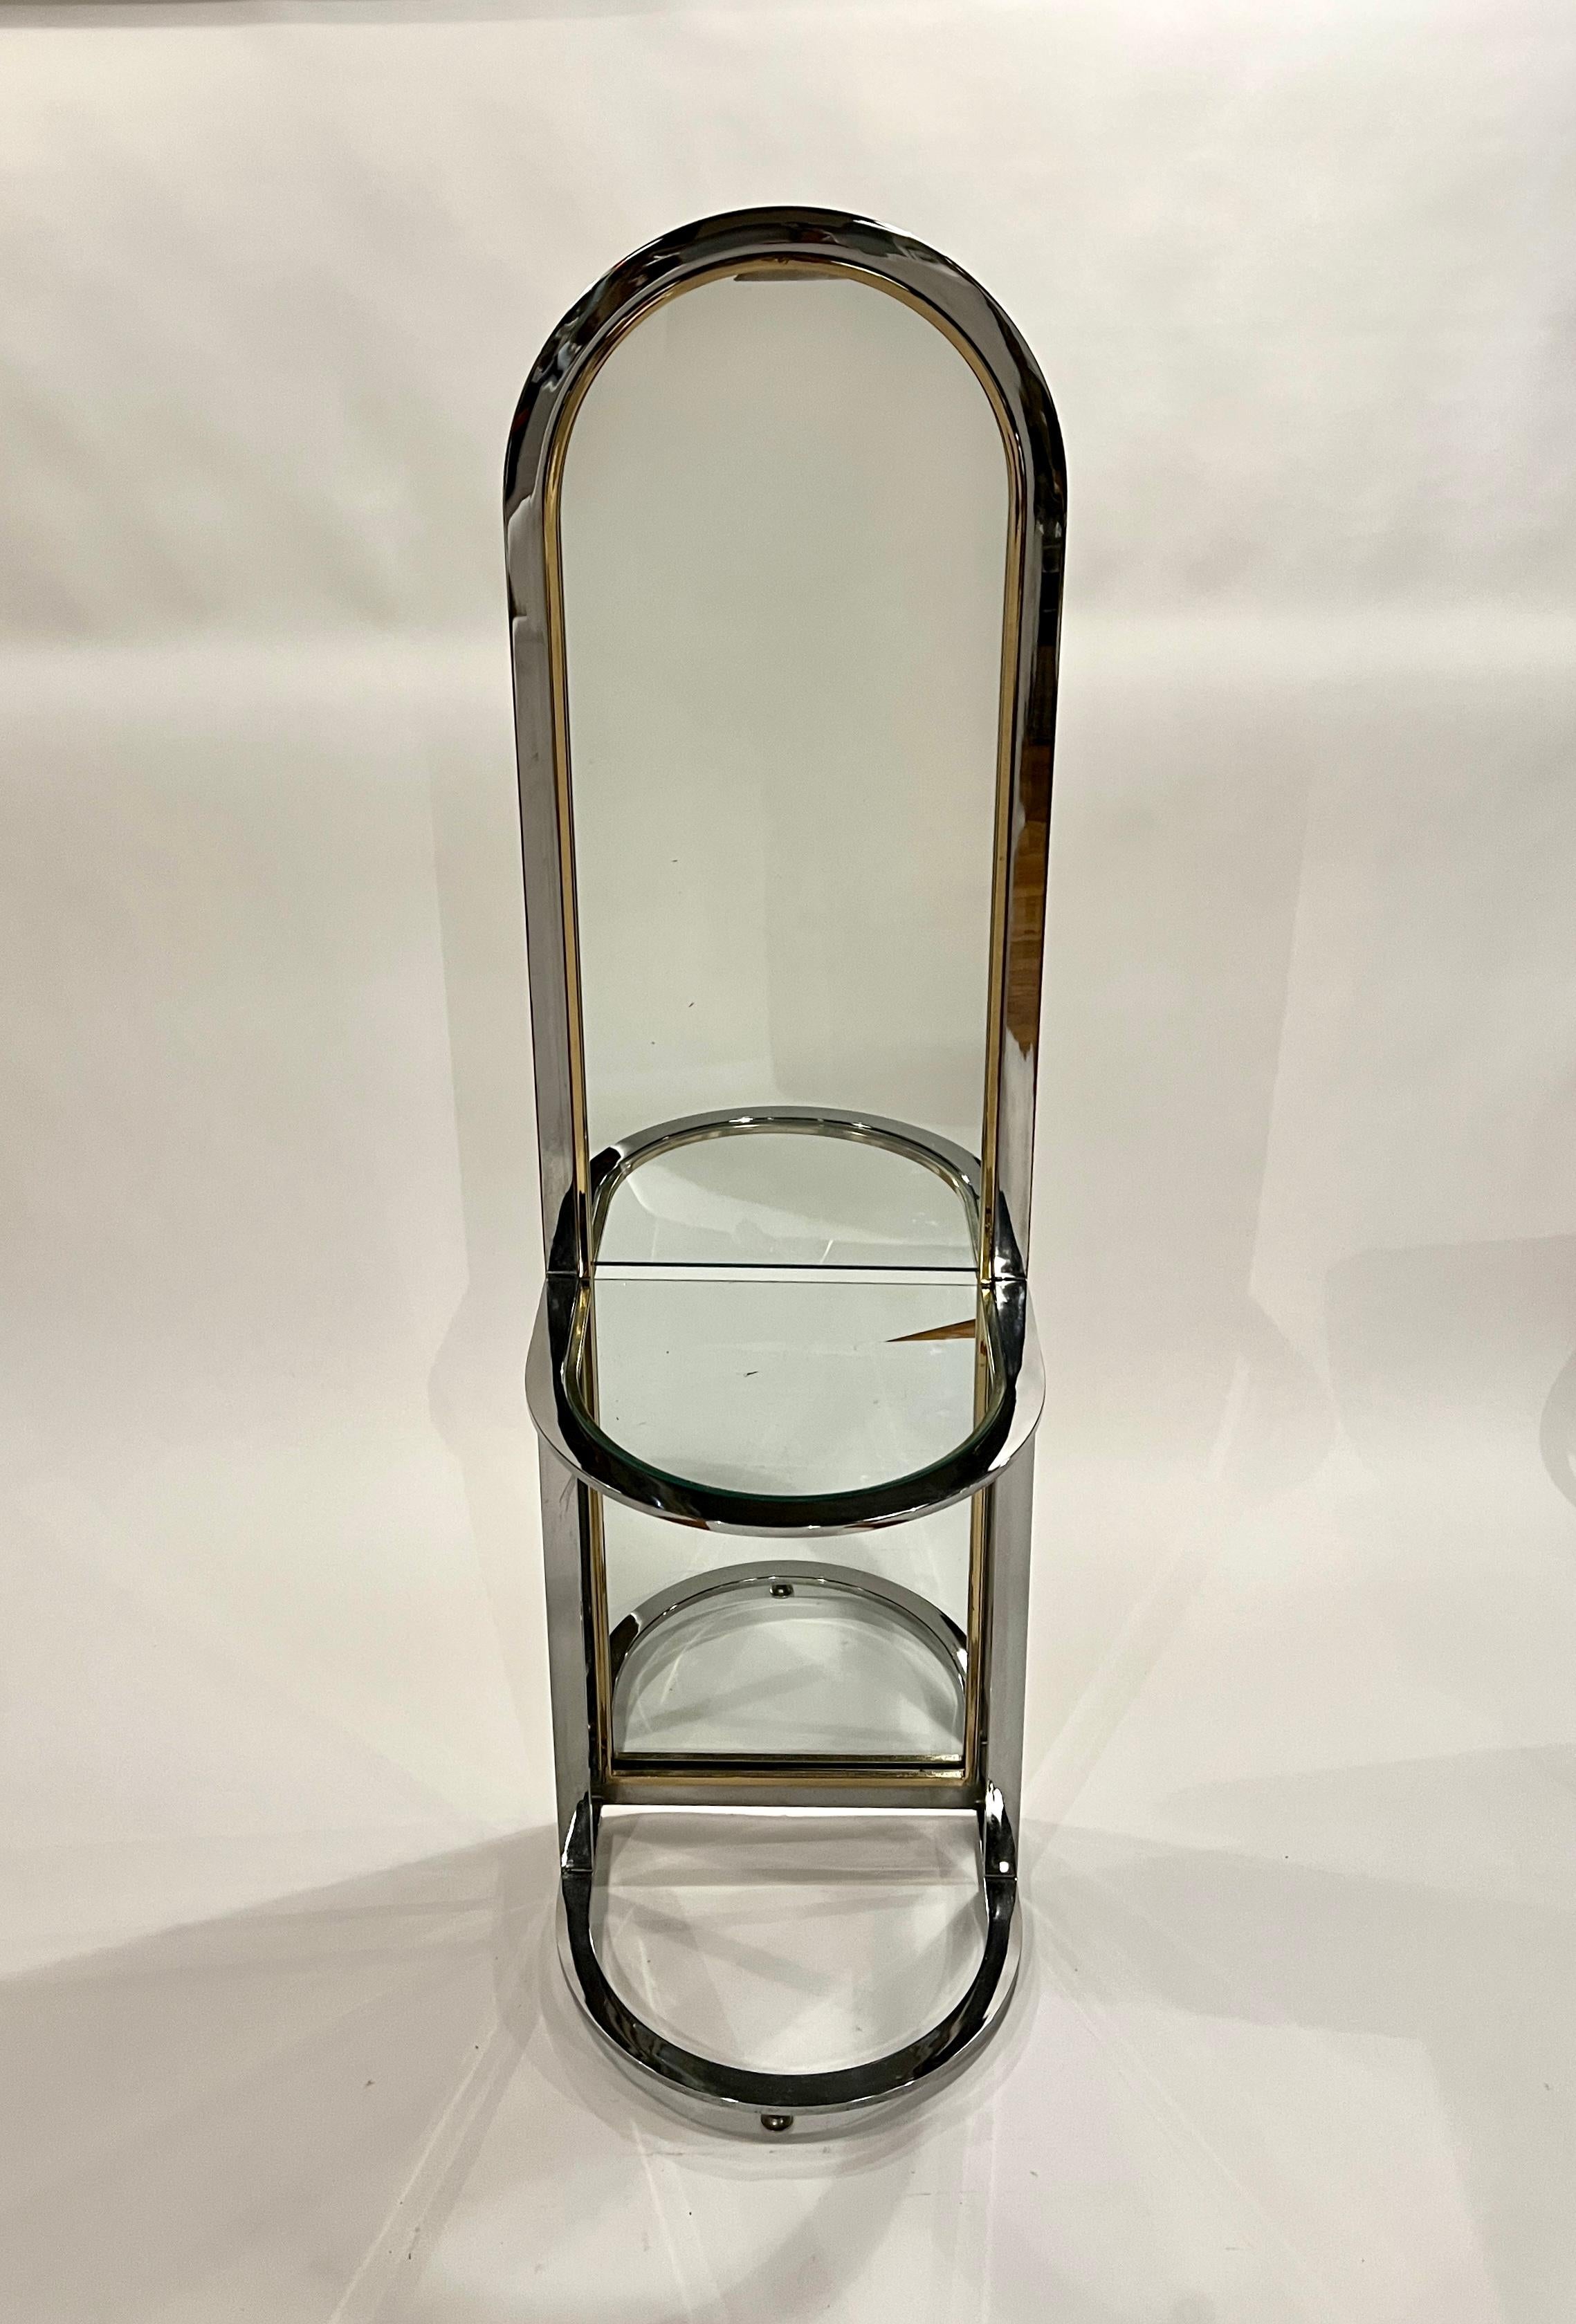 Miroir de sol du 20e siècle à pied avec table en verre Design/One, fabriqué dans un cadre chromé avec des inserts en laiton. 